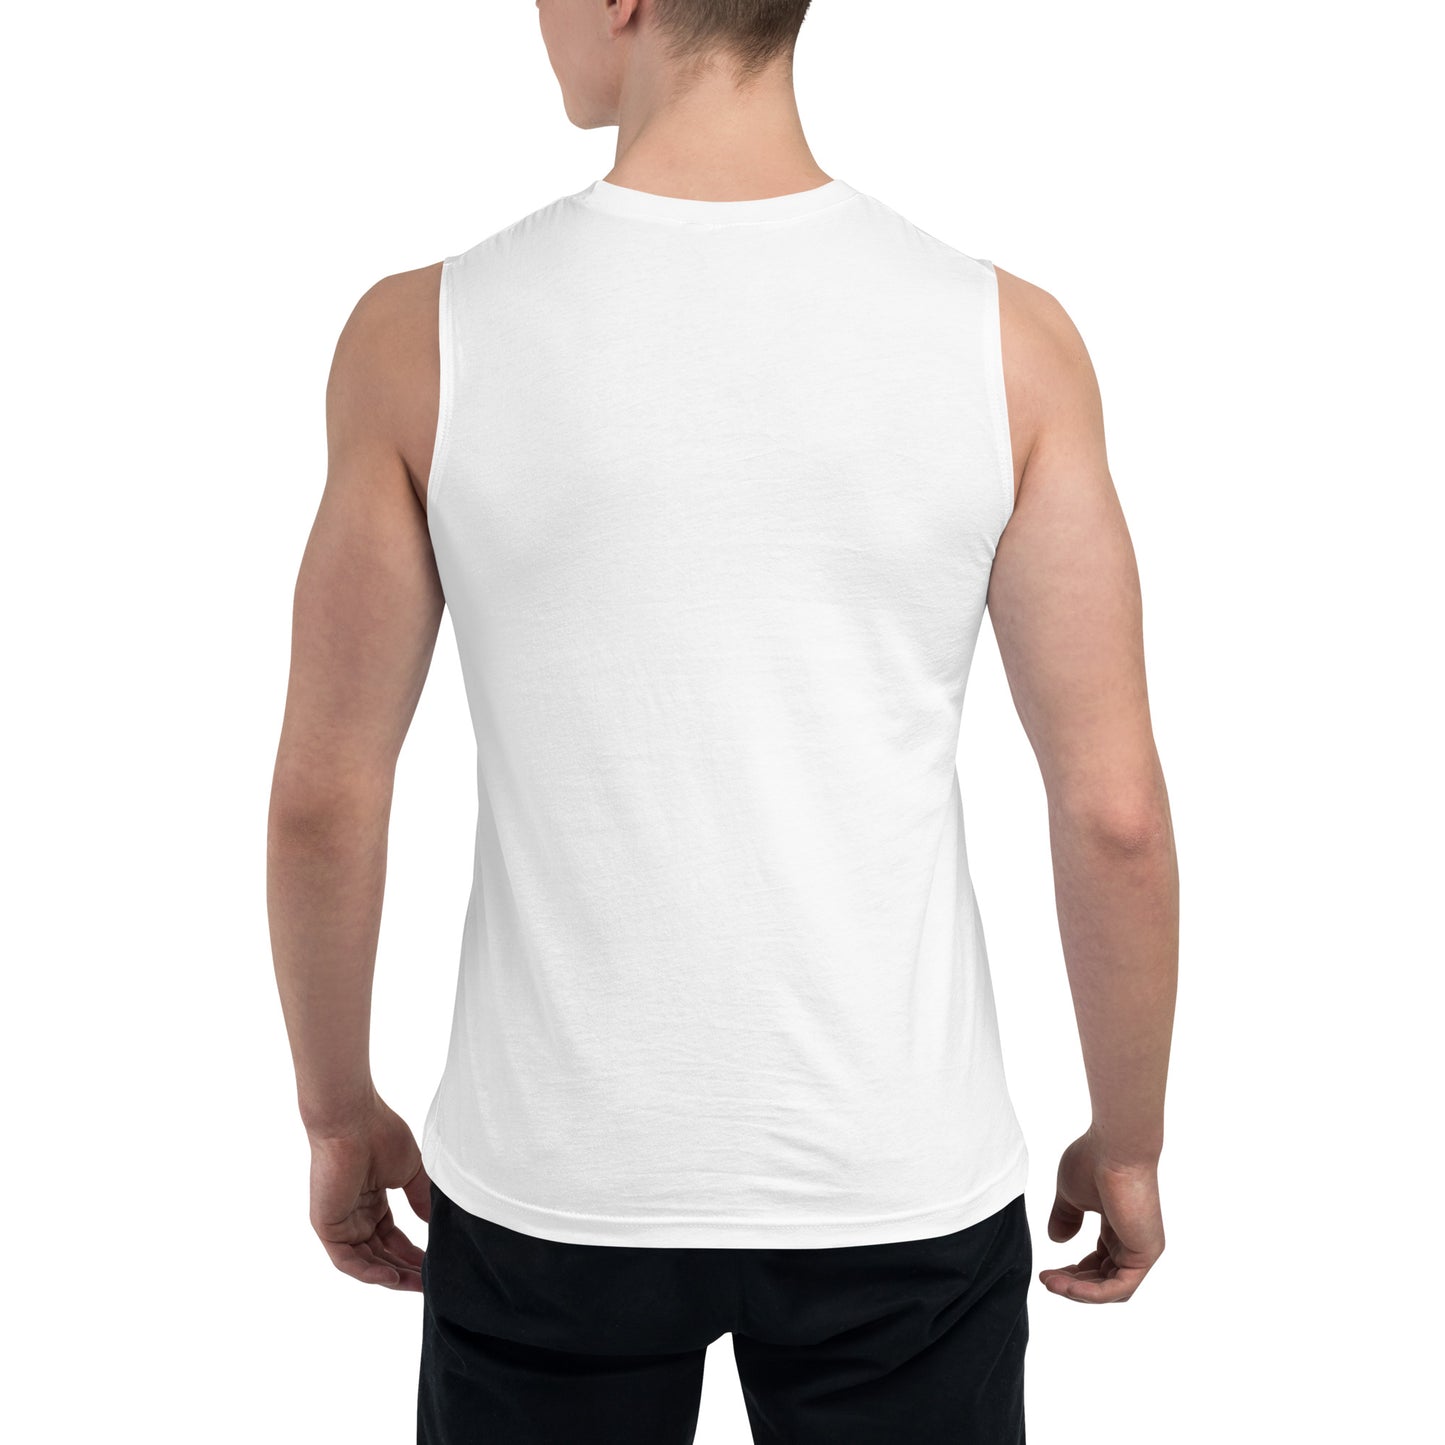 DANCER Muscle Shirt